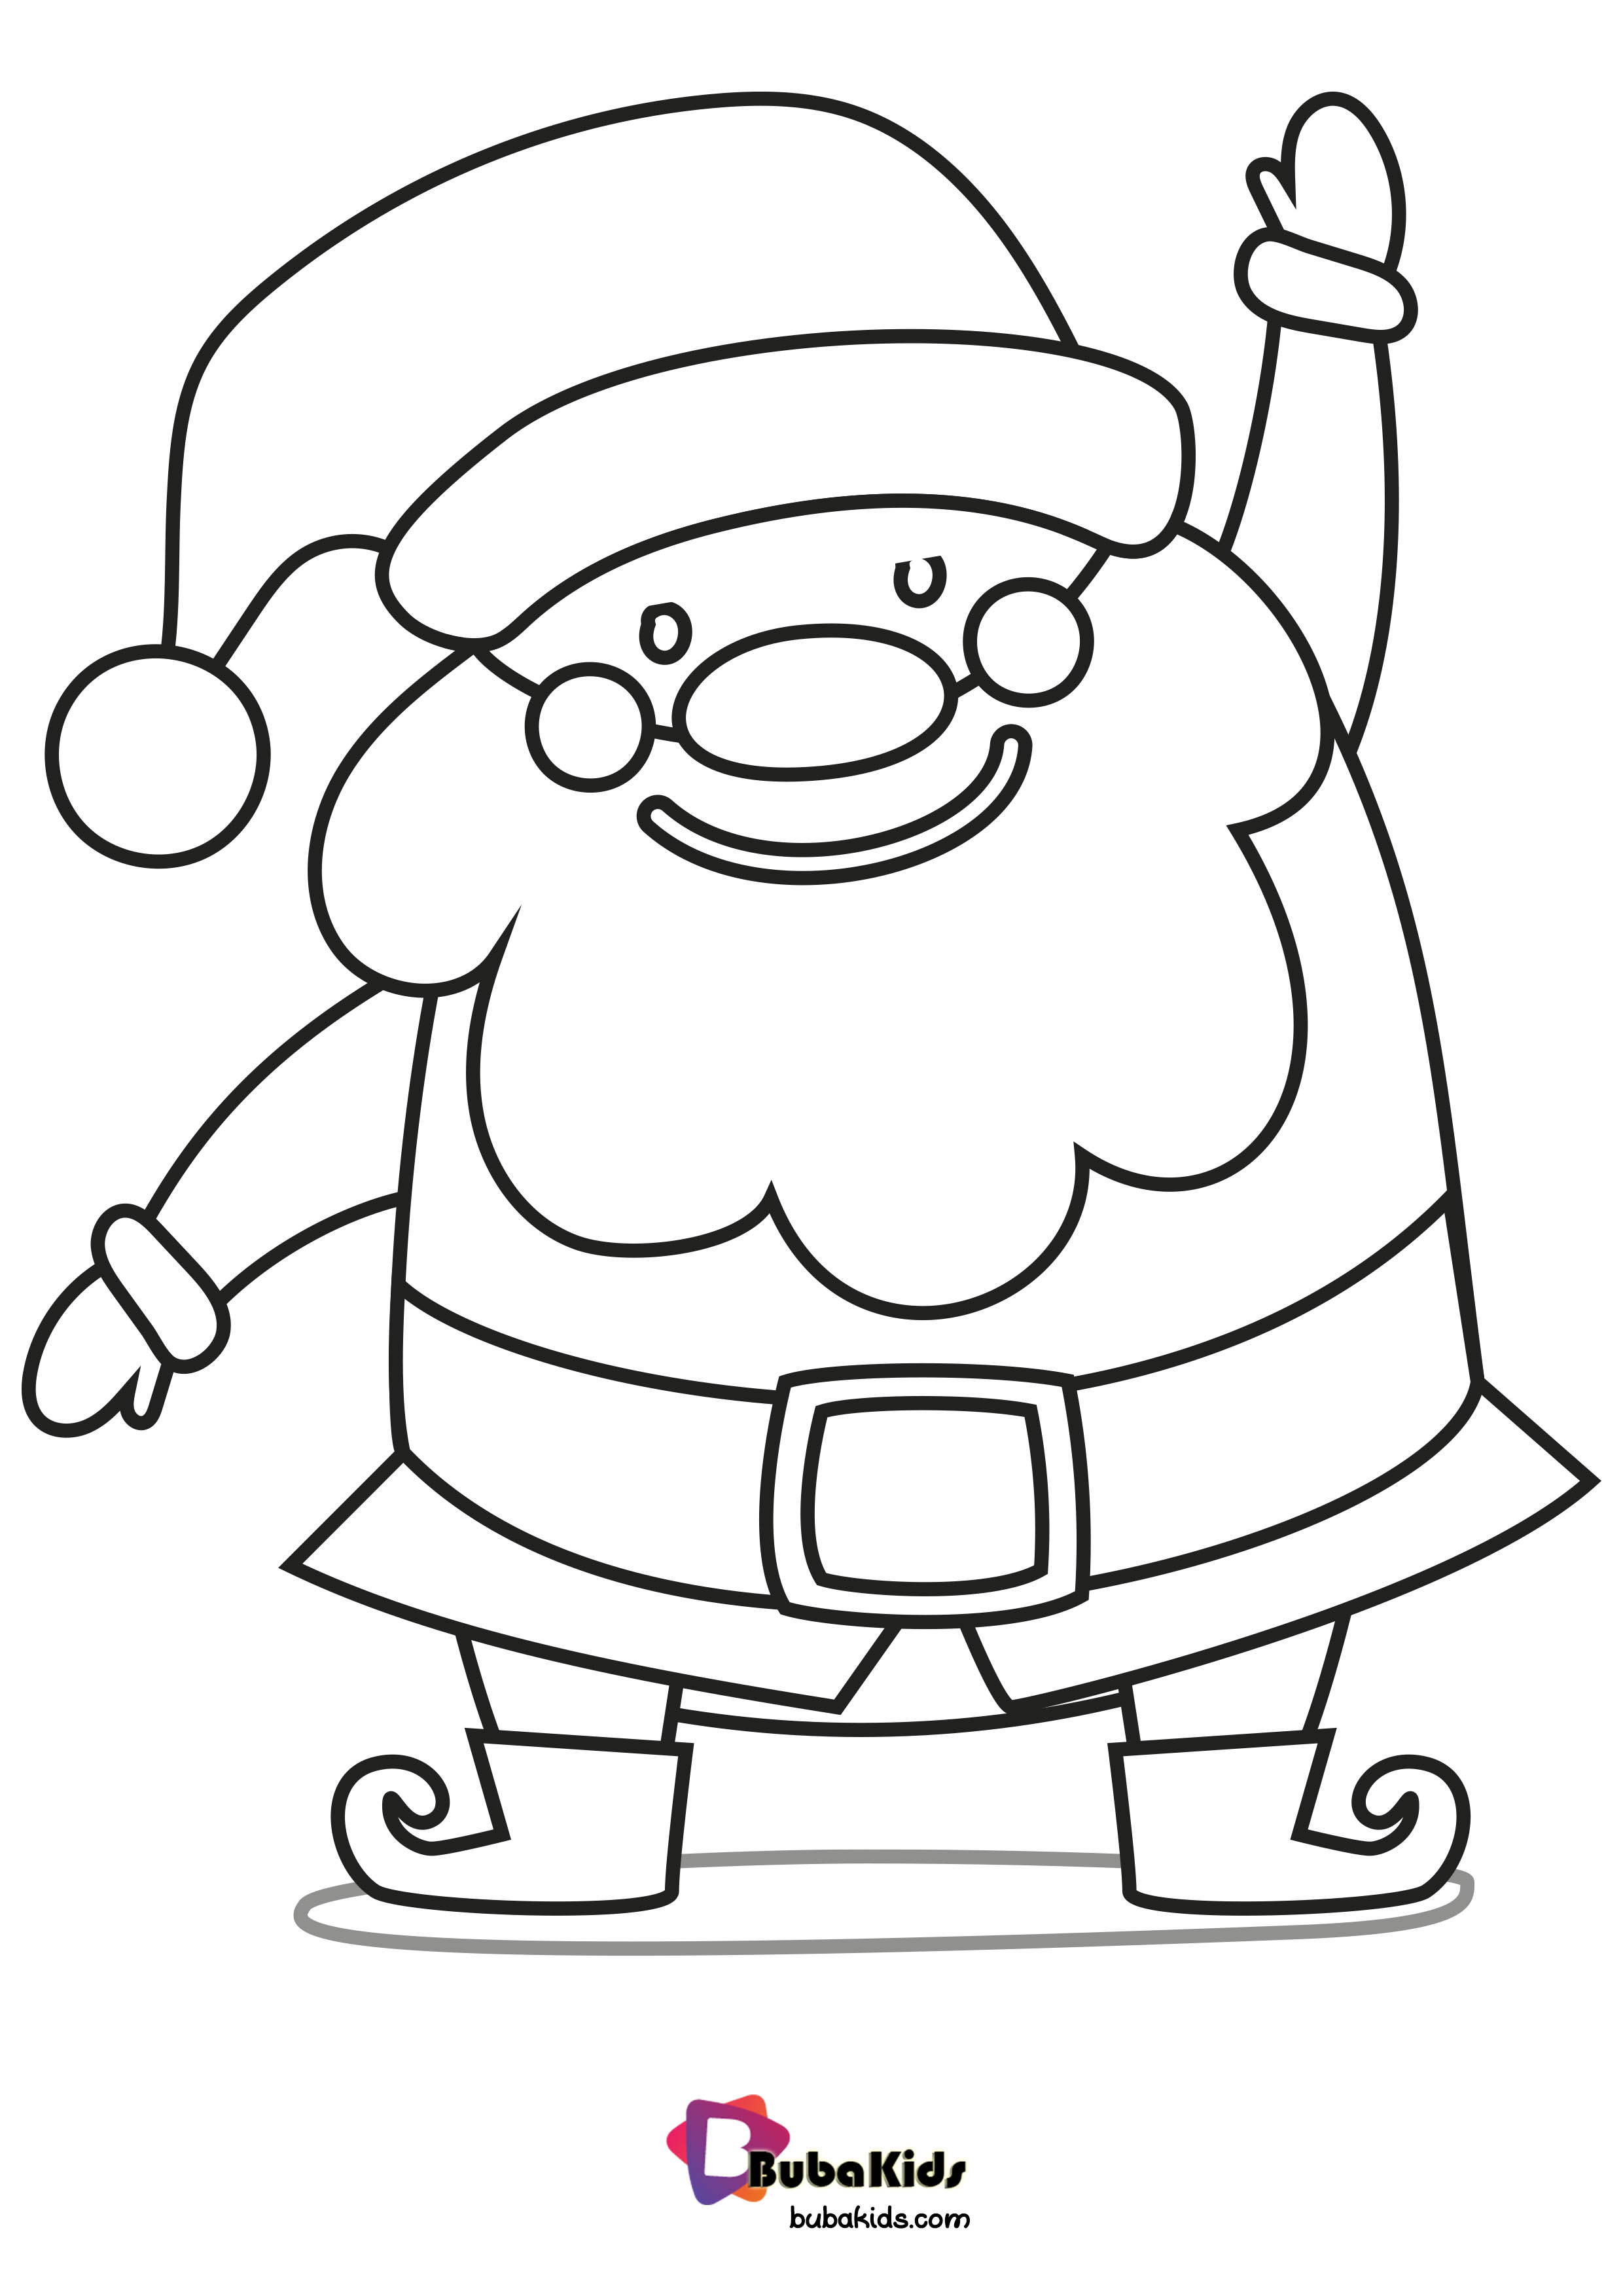 Hohoho Say Hello to Santa Coloring Page Wallpaper